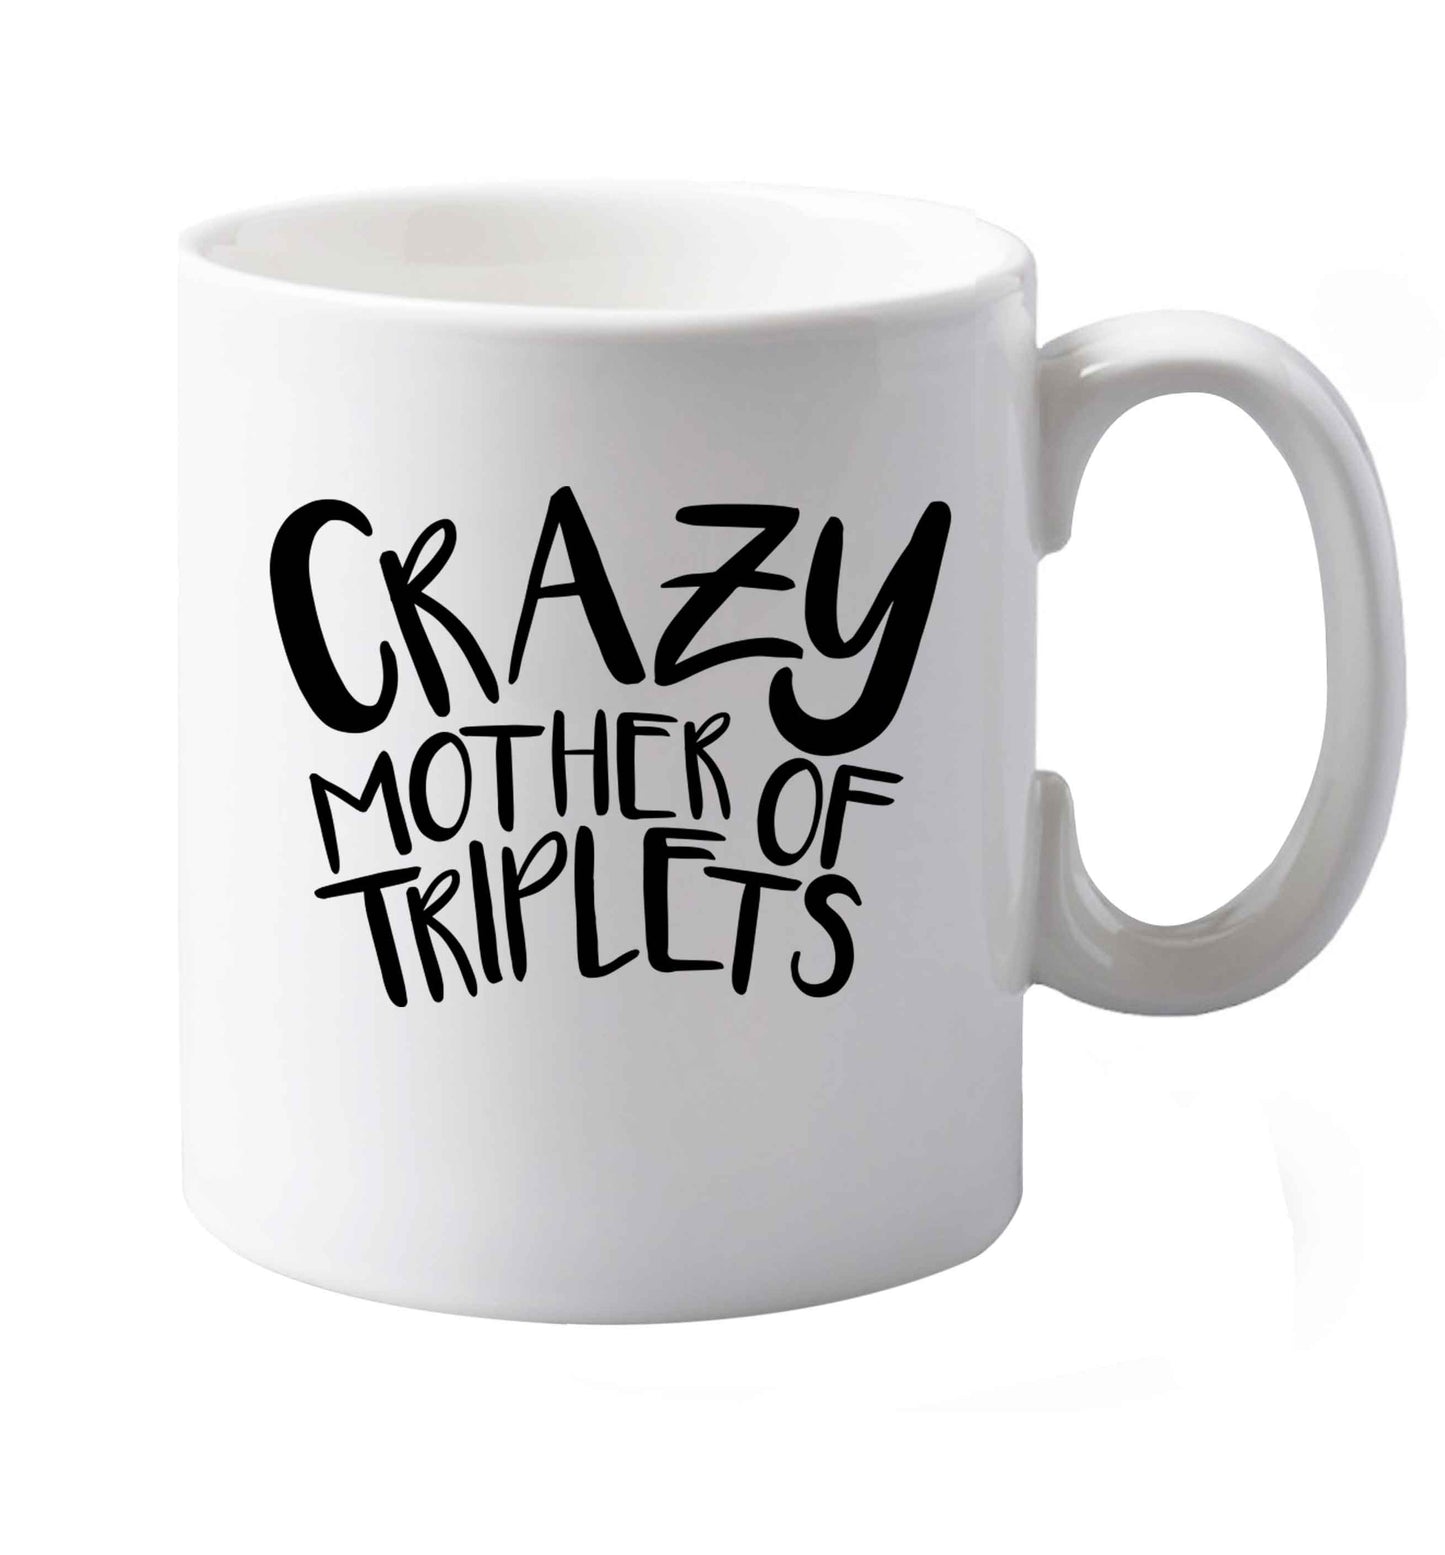 10 oz Crazy mother of triplets ceramic mug both sides